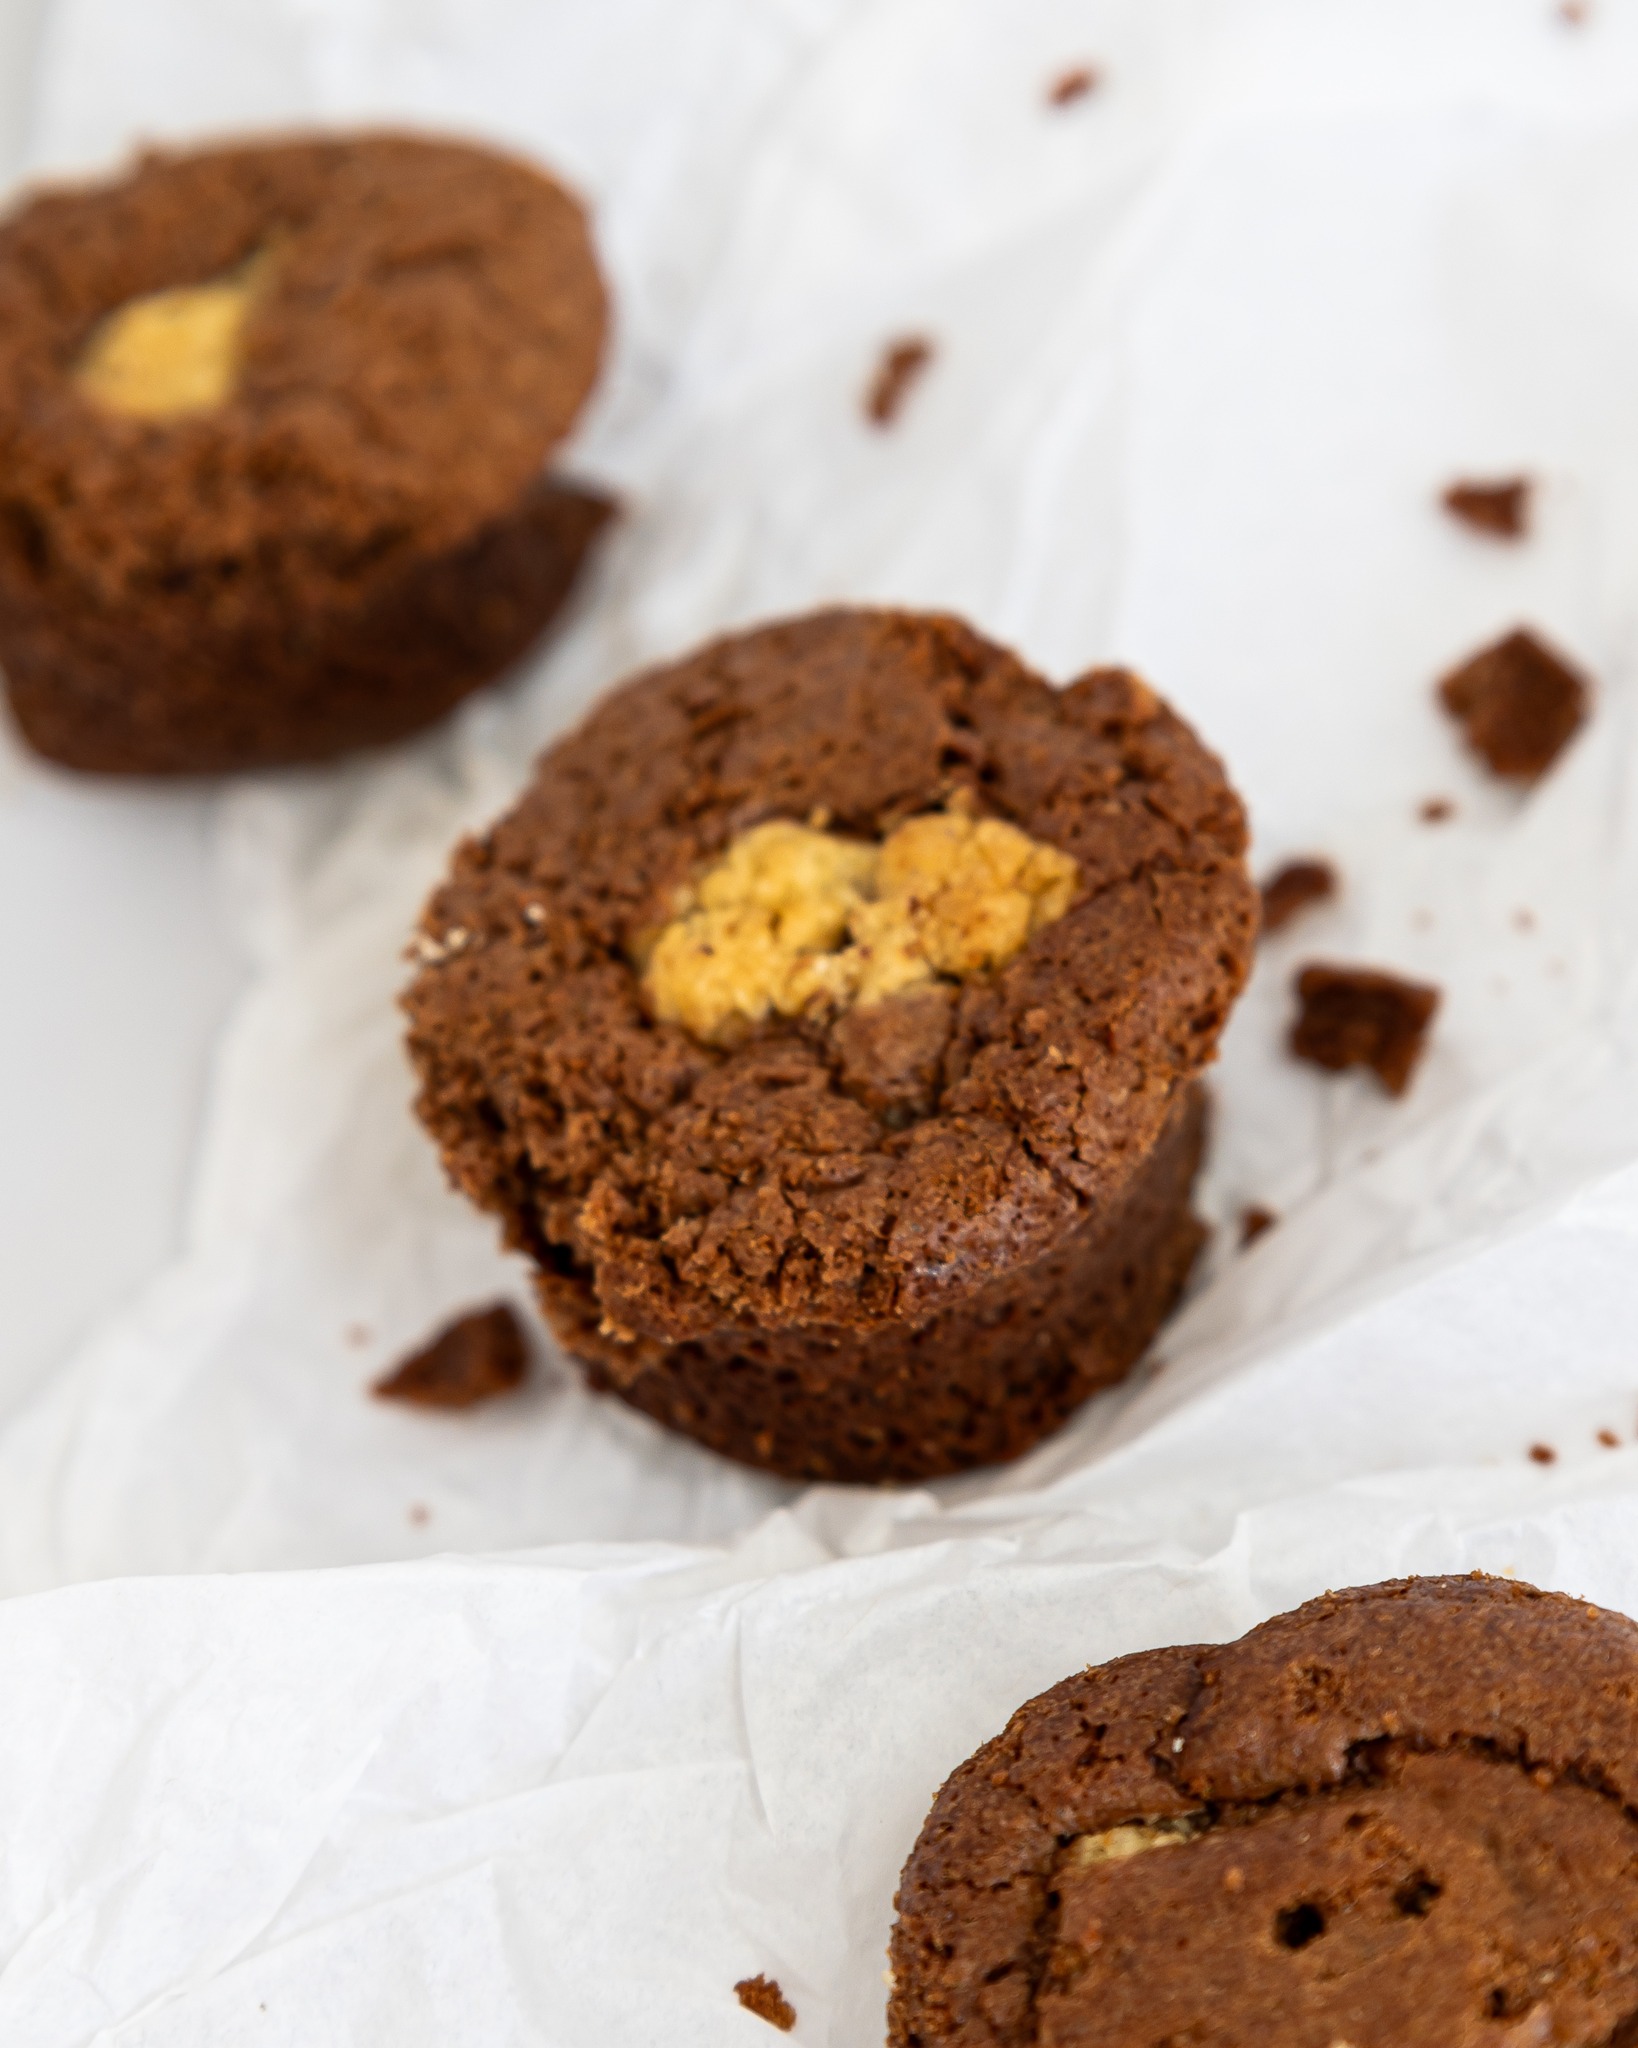 Laissez-vous tenter par le CHOOKIE ! 

Vous aimez le gâteau au chocolat ? Vous aimez aussi les cookies ? Le Chookie sera votre ami ! 🤎

🍪 Faits maison à Gémenos (13)
📍Disponibles dans plusieurs points de vente
💌 Plus d’infos sur notre site web (lien dans notre bio)

#CookiesGiraudon #Bonheur #CookiesAvecAmour #GourmandiseAuthentique #homemadewithlove #CookiesArtisanaux #FaitAvecAmour #Gémenos #CuisineArtisanale #marseille #MadeInFrance